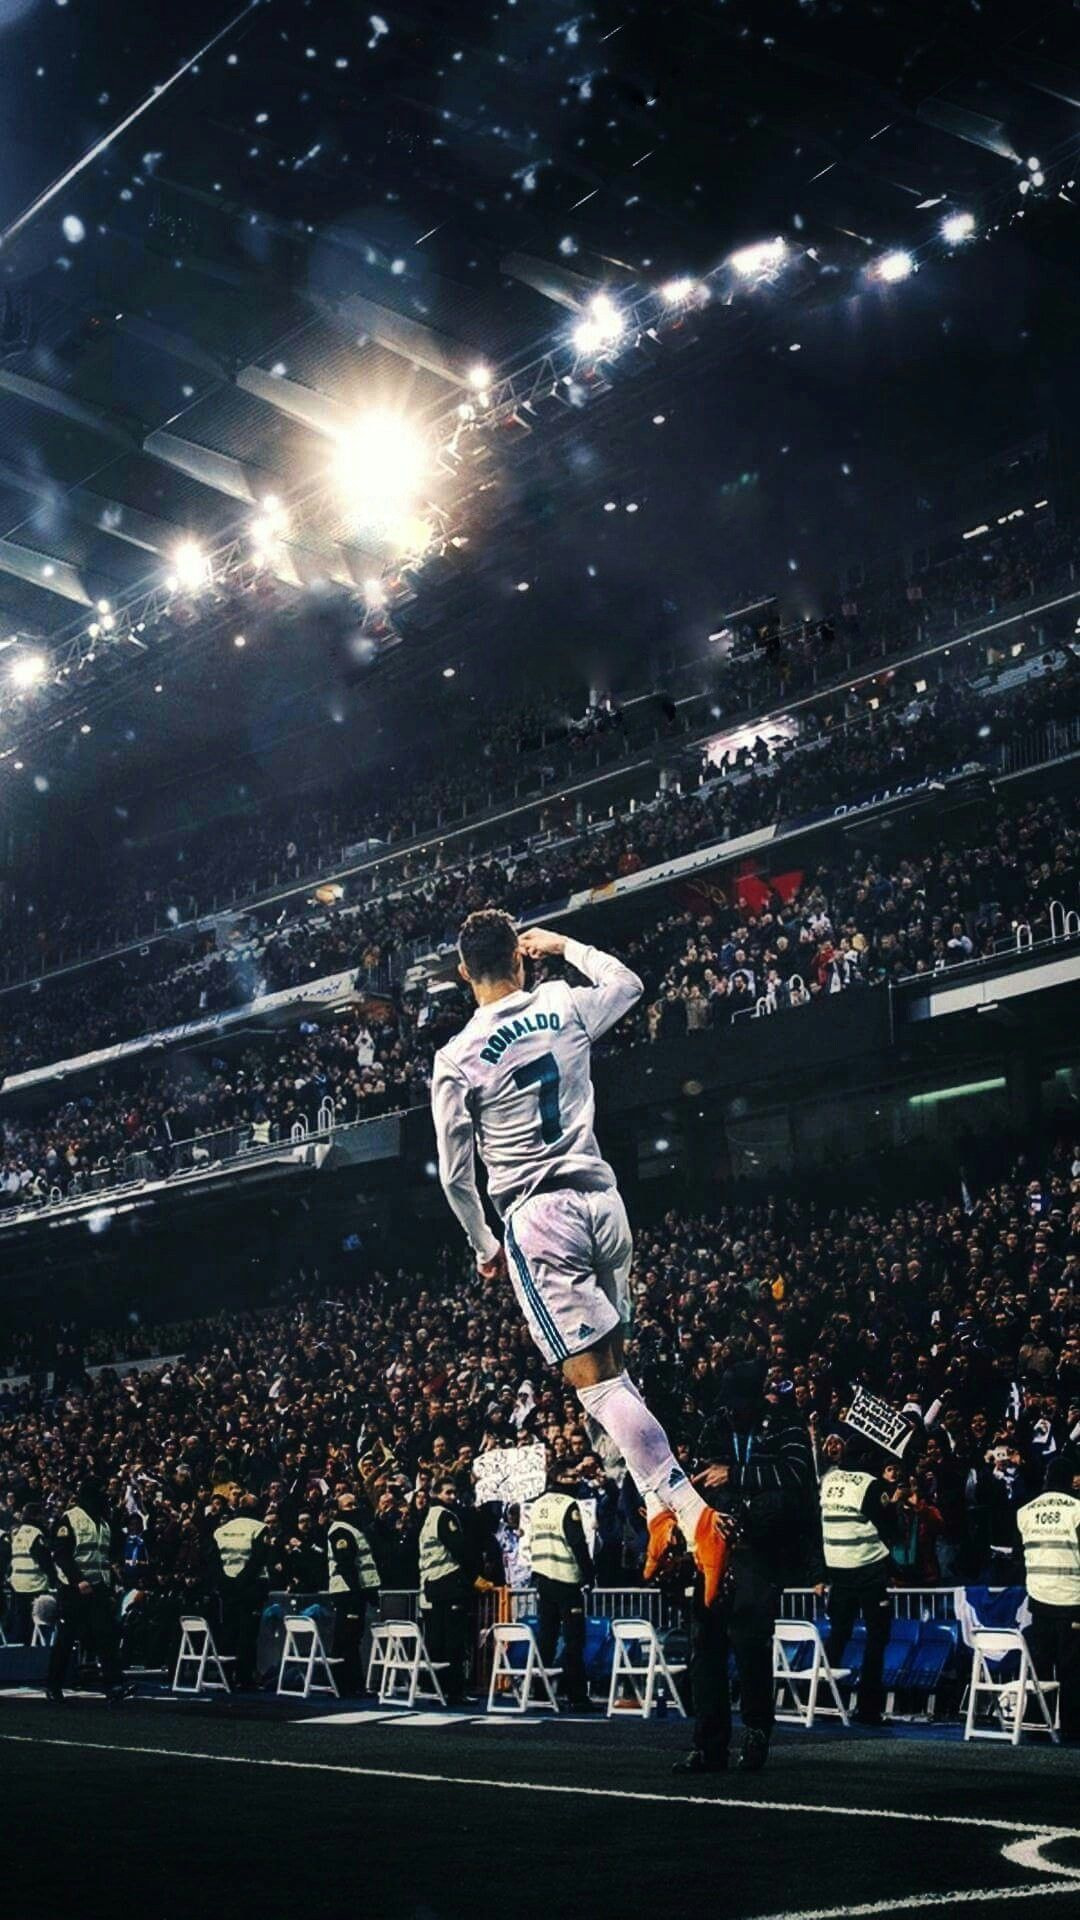 Hãy tải về ngay những hình nền iPhone của Ronaldo theo cách thỏa sức với sở thích của bạn. Đây là cơ hội tốt để sở hữu những hình ảnh đầy tinh thần thể thao và sự nghiệp lẫy lừng của người cầu thủ nổi tiếng này.